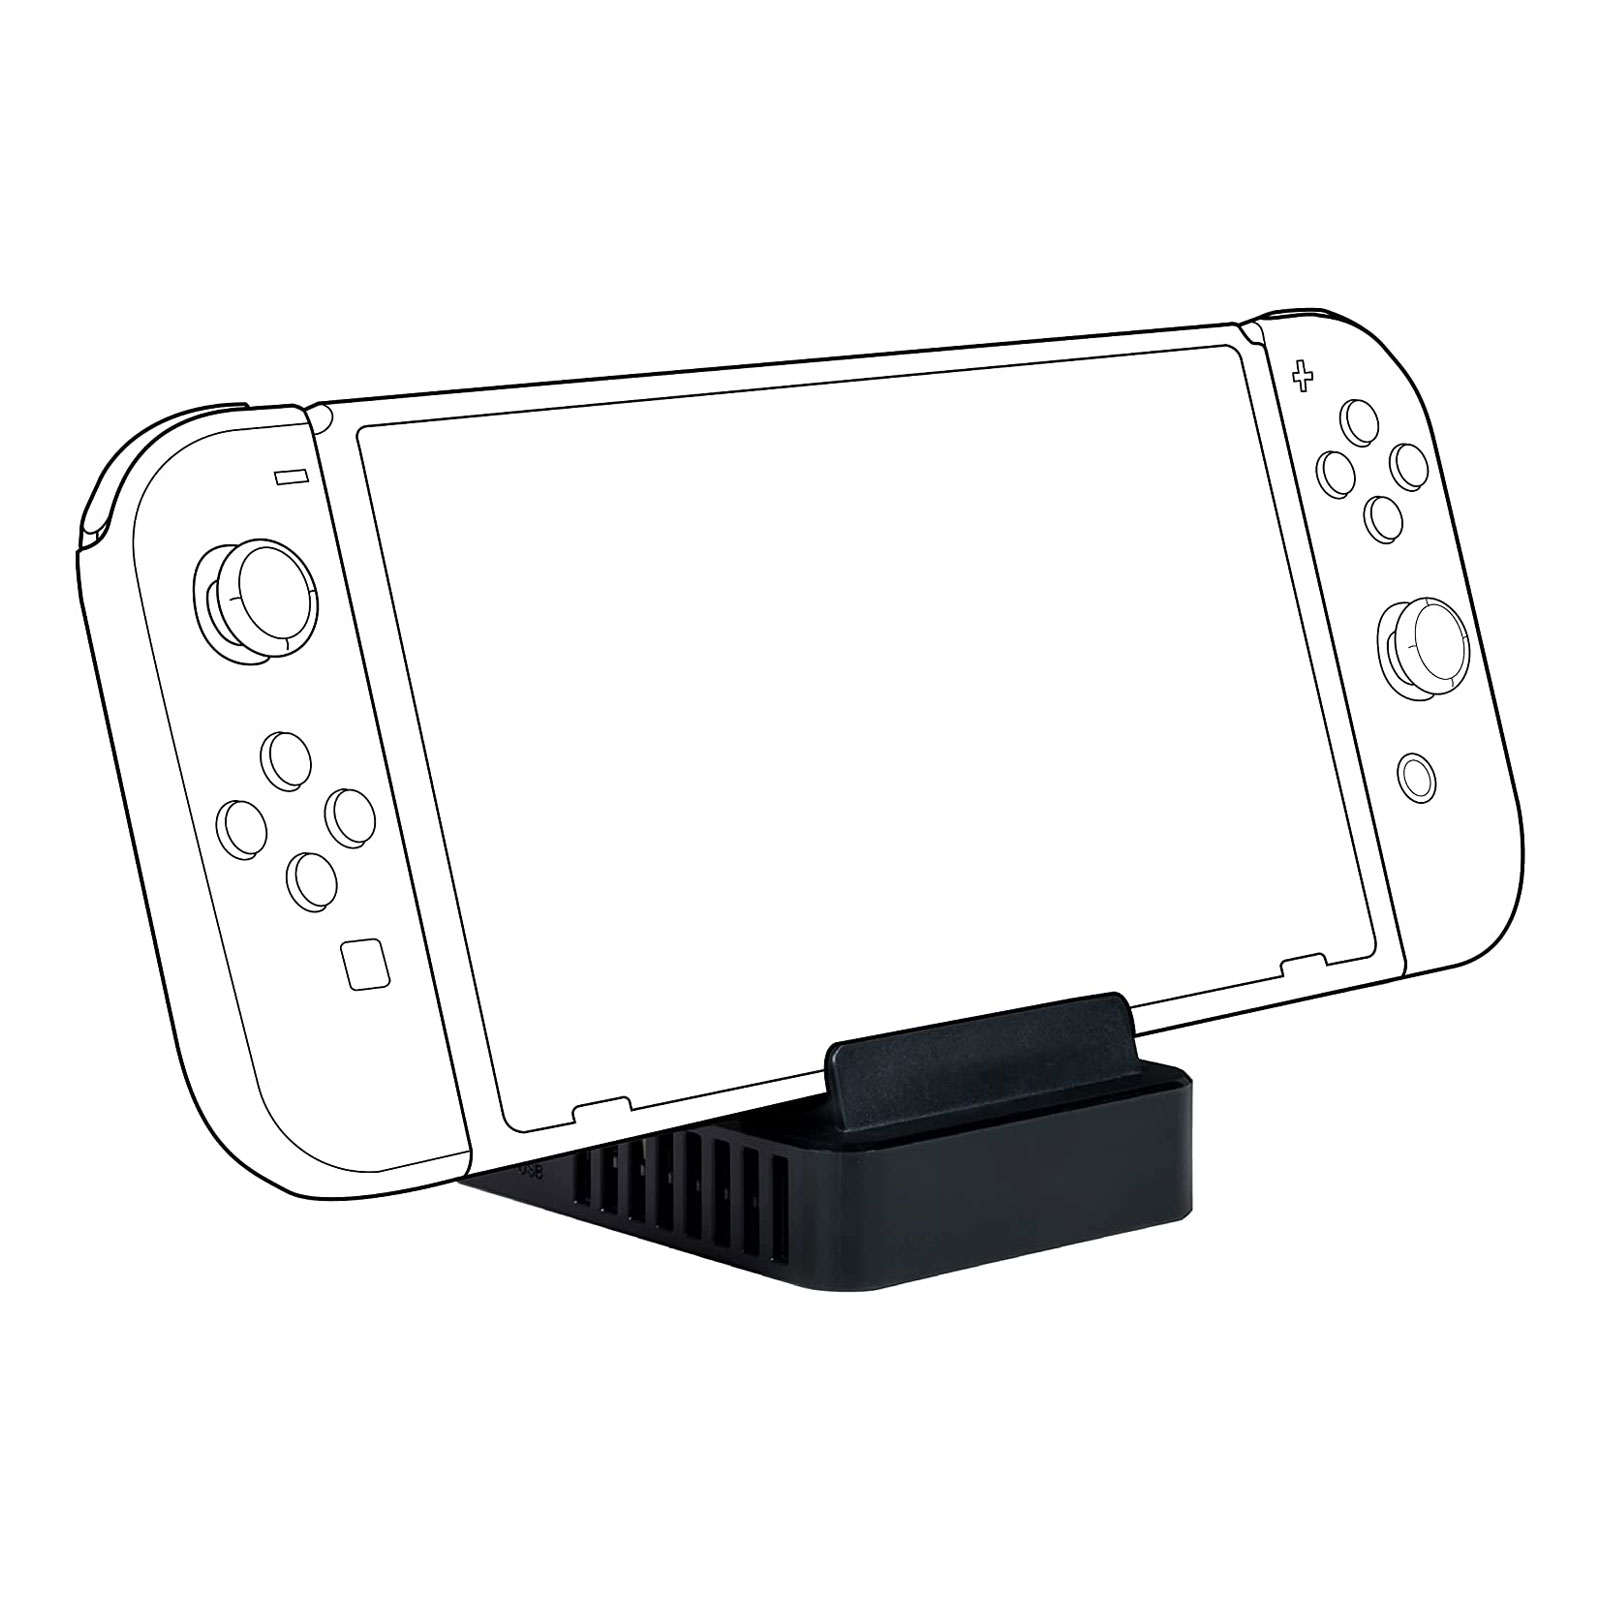 nacon TV-Ständer für Nintendo Switch und Nintendo Switch OLED-Modell